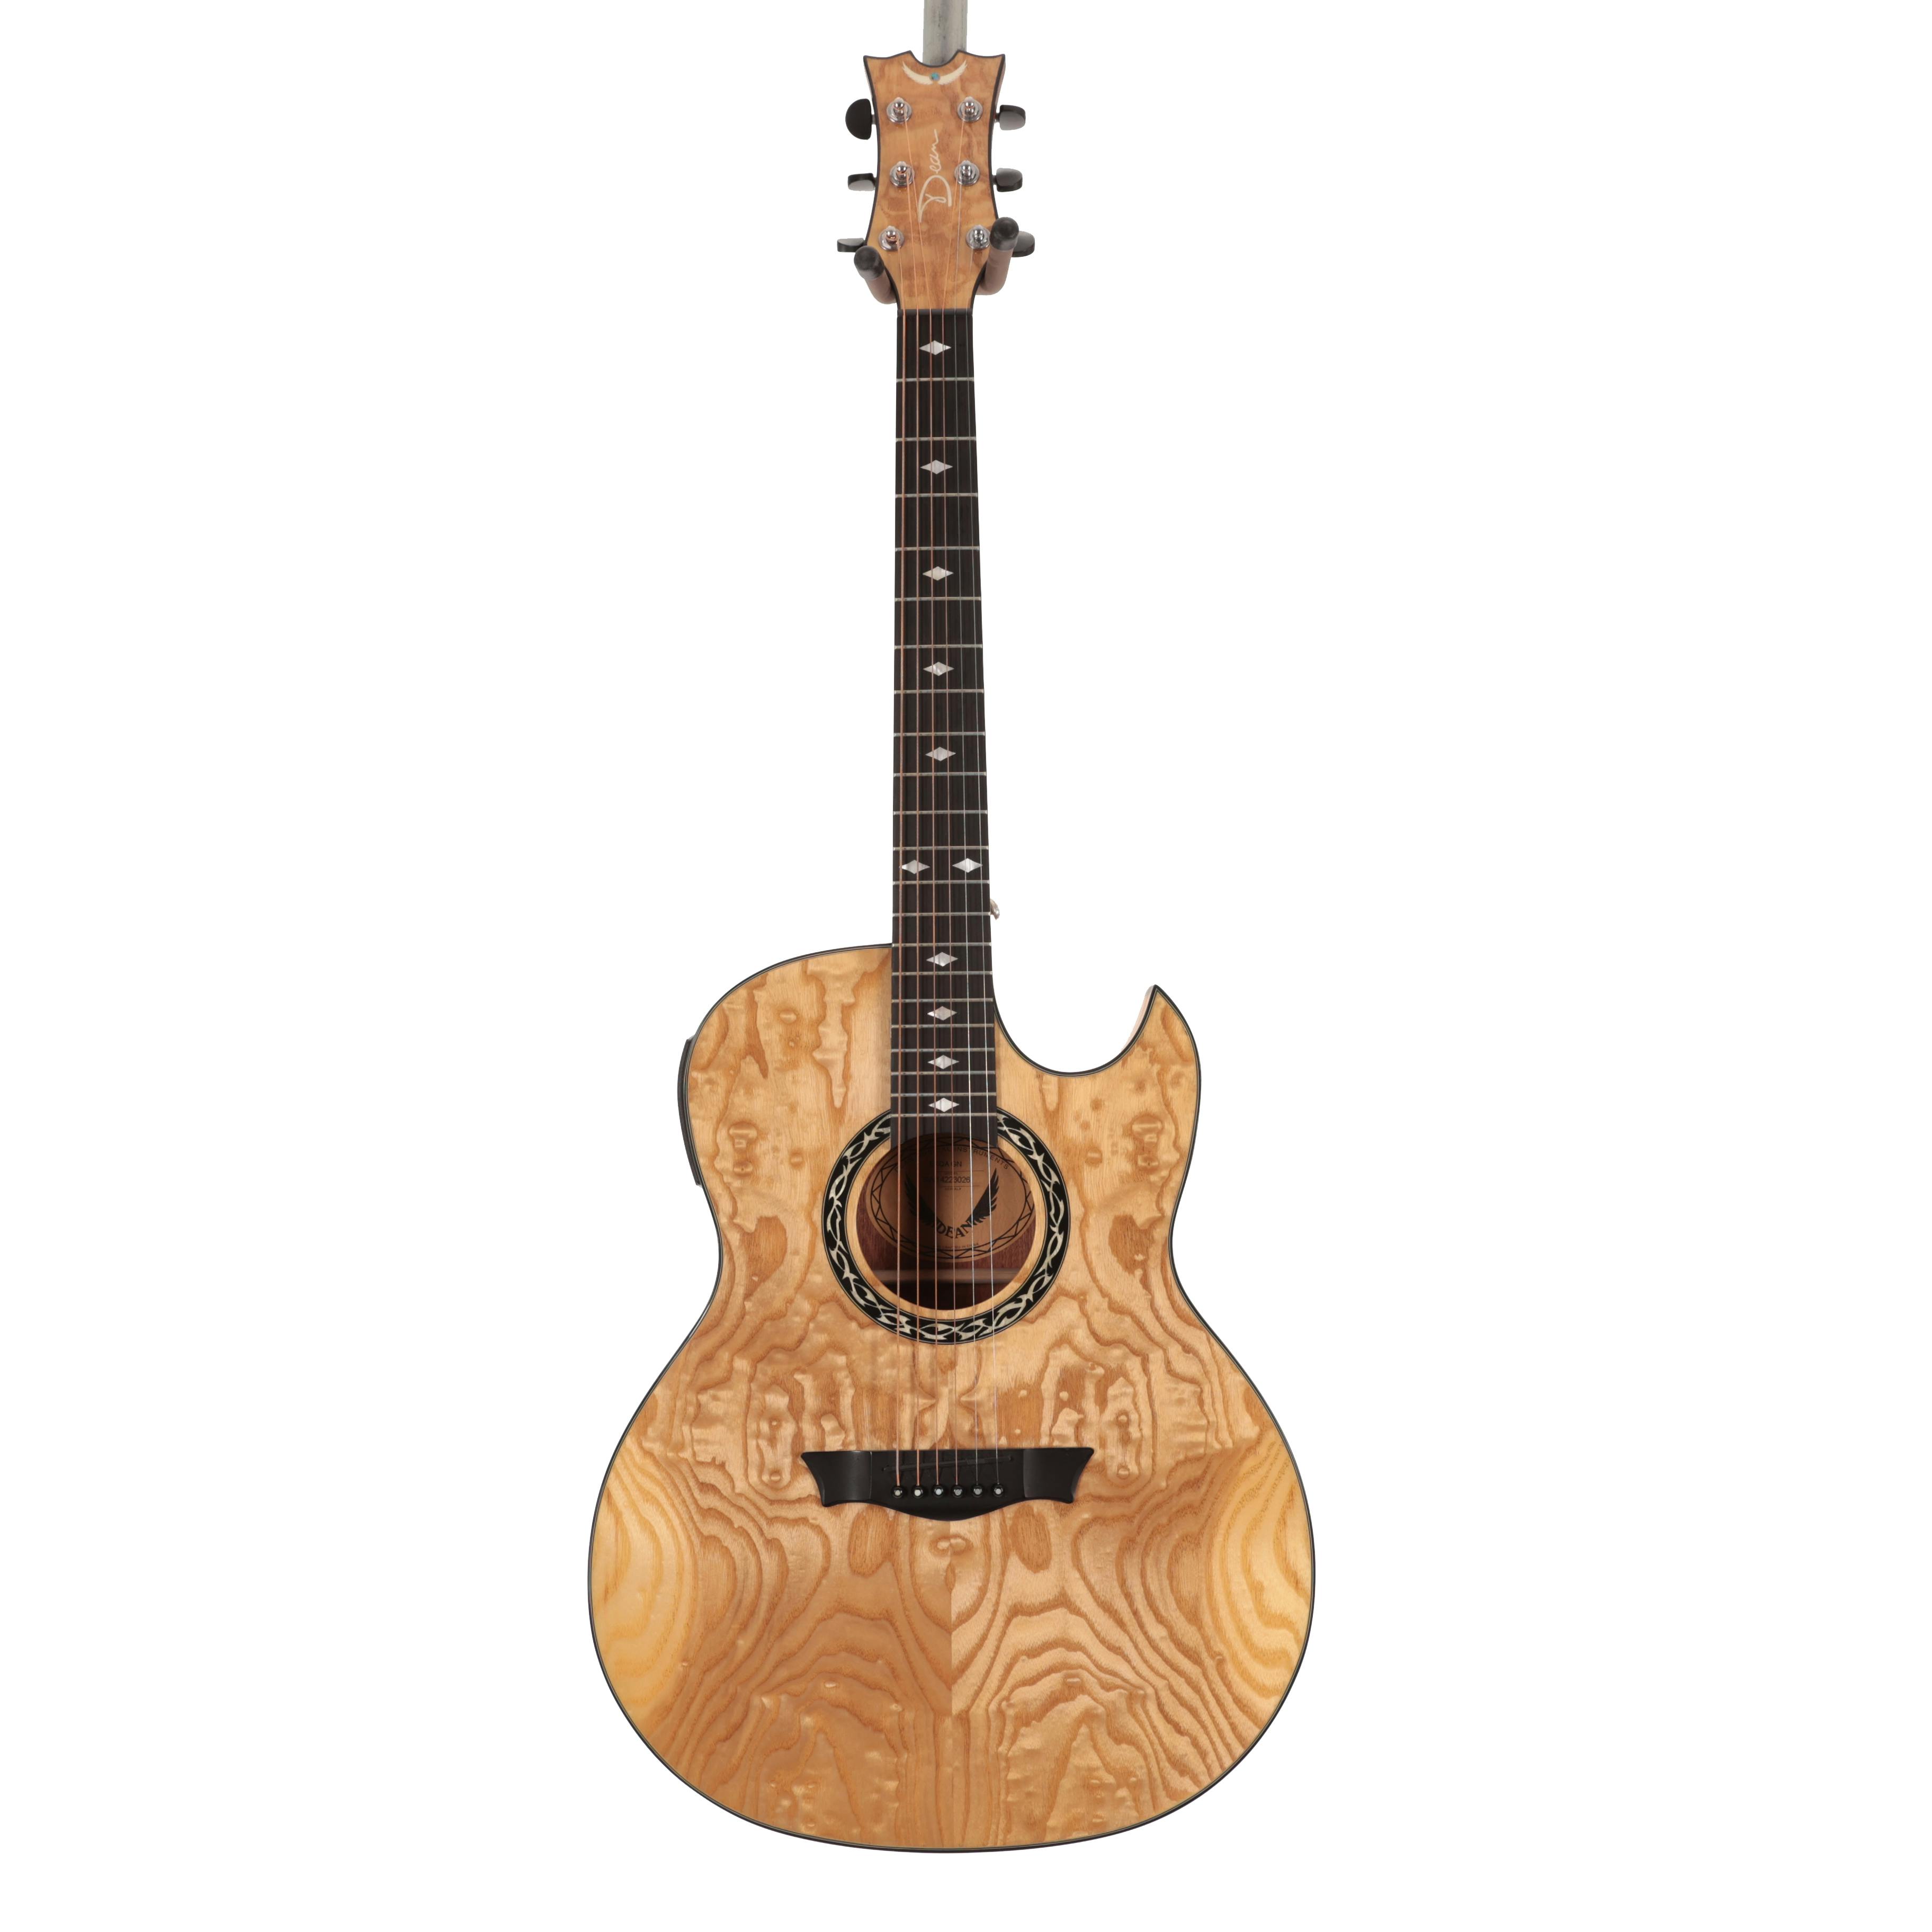 Used Dean Exhibition Quilt Ash Acoustic Electric Guitar 2 Color Sunburst